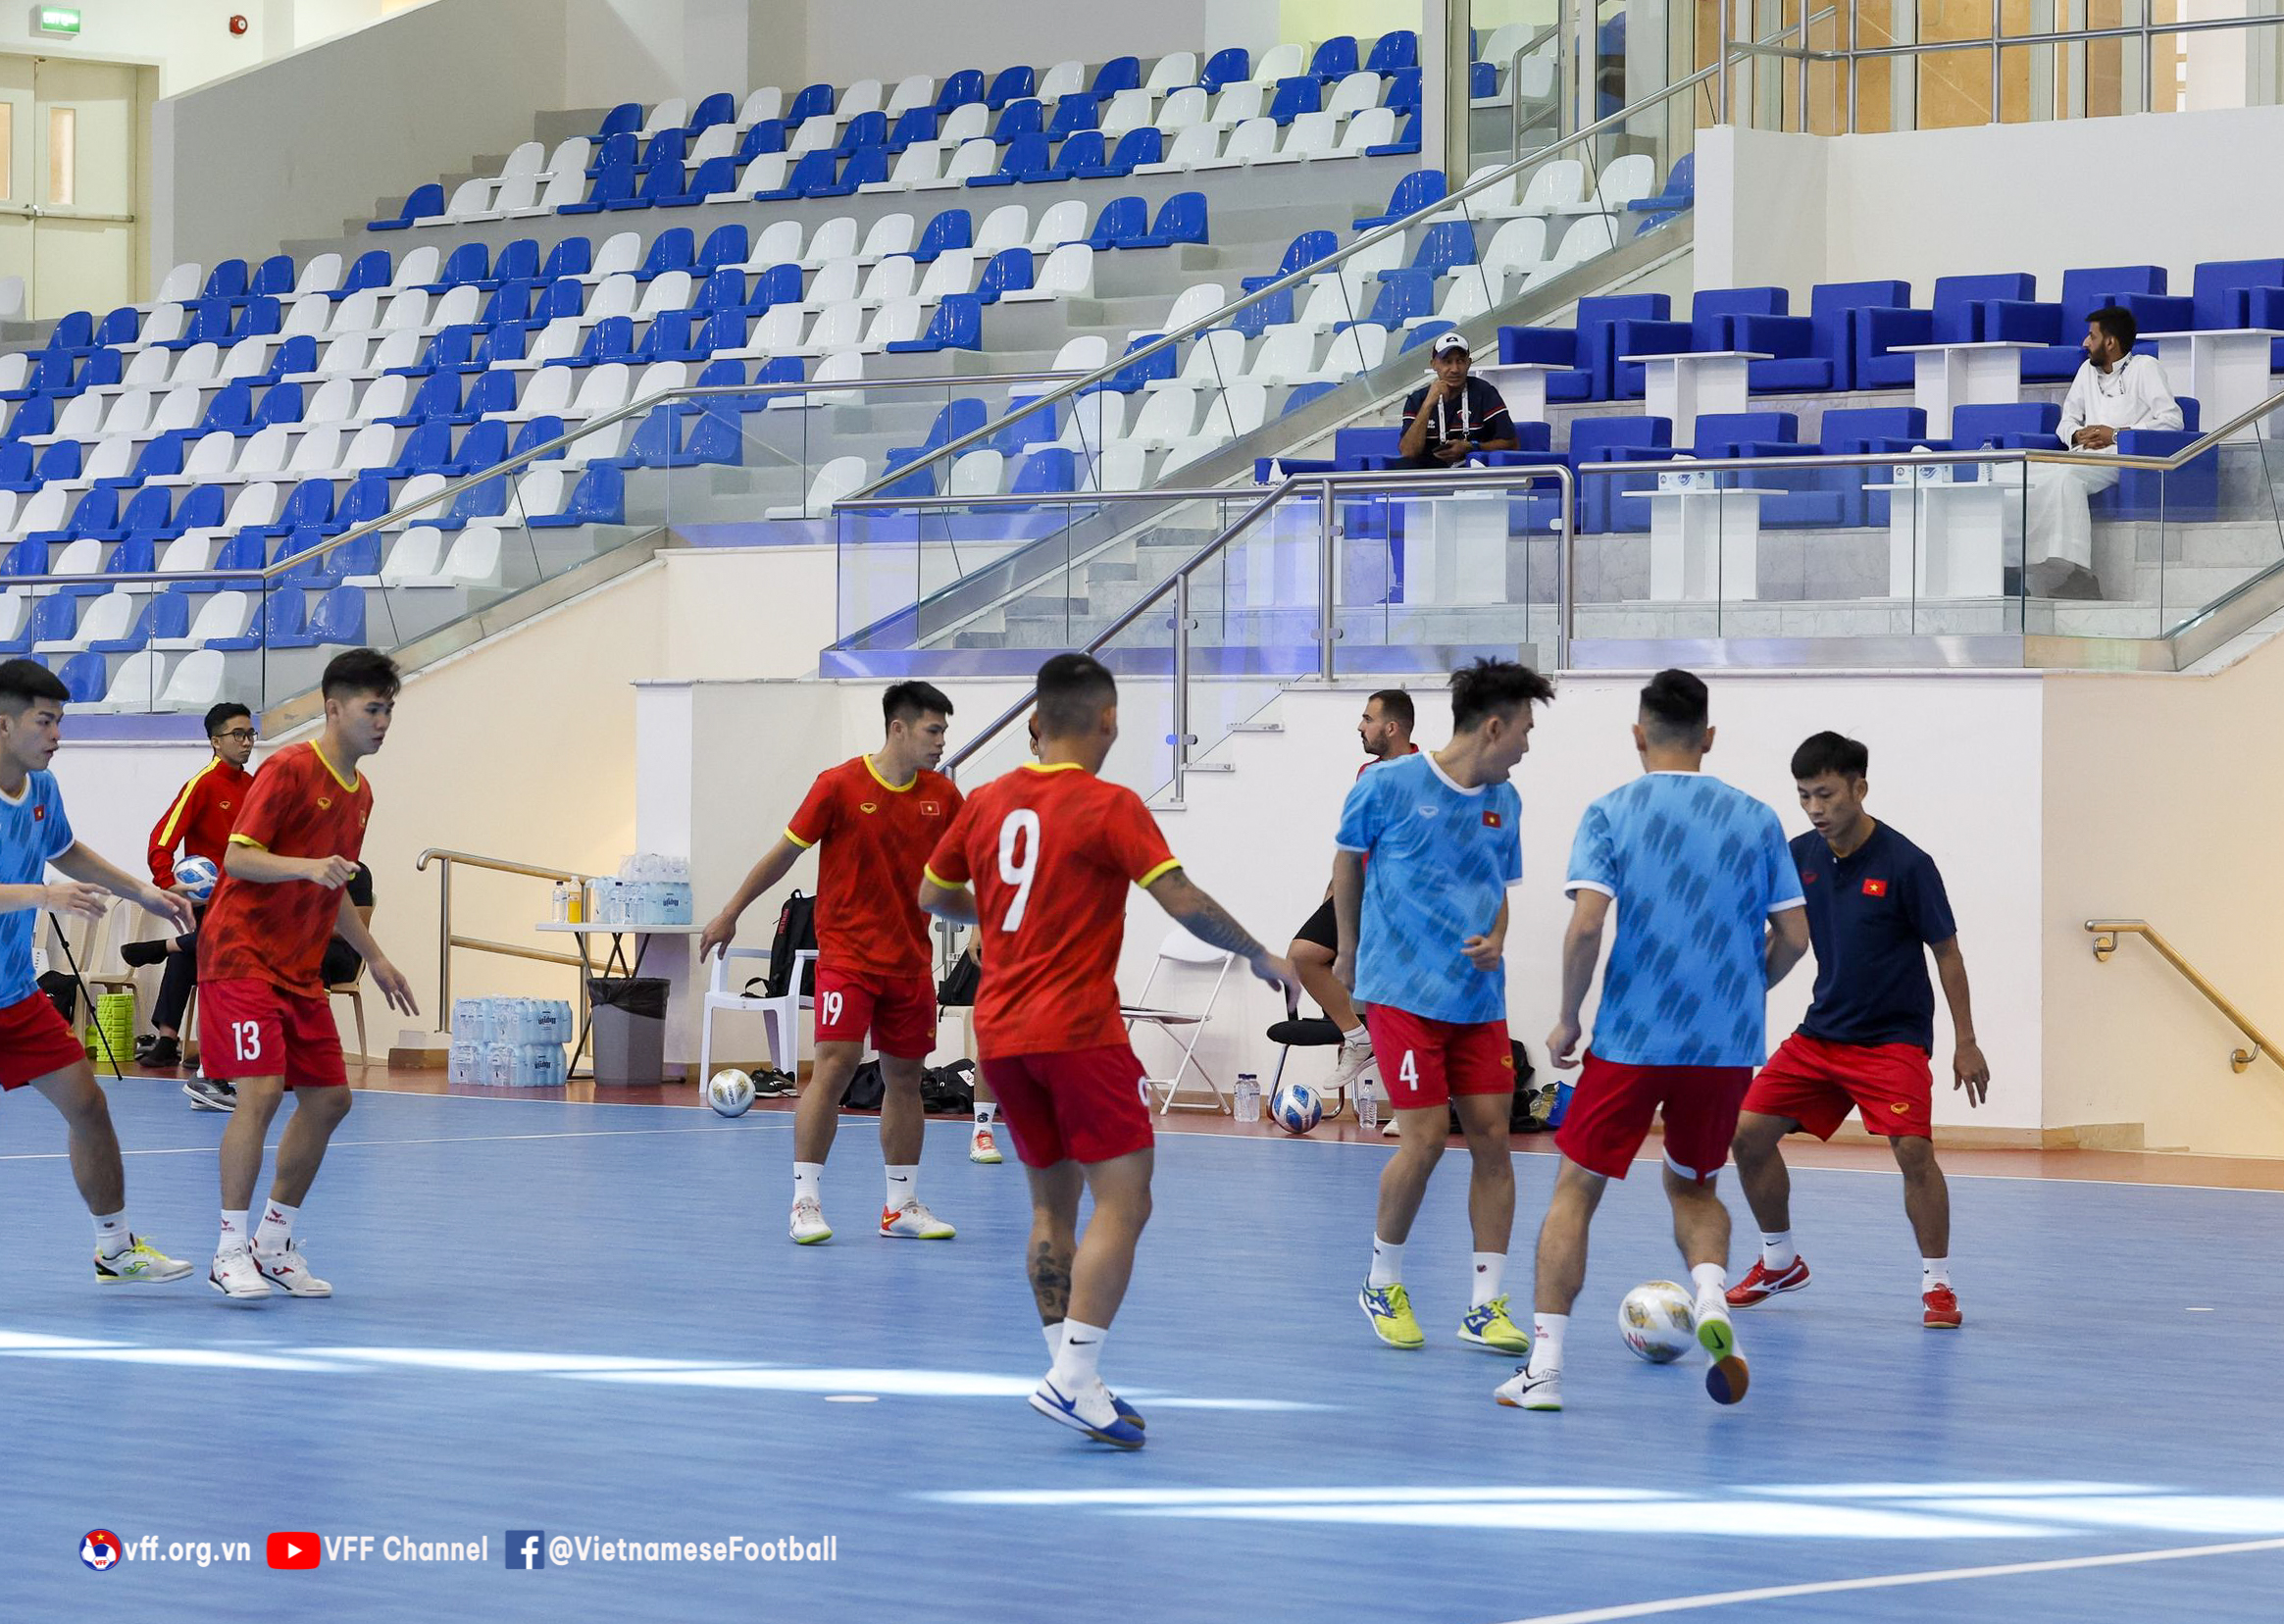 ĐT Việt Nam đẩy cao khối lượng, chọn điểm rơi trước thềm VCK futsal châu Á 2022 - Ảnh 1.